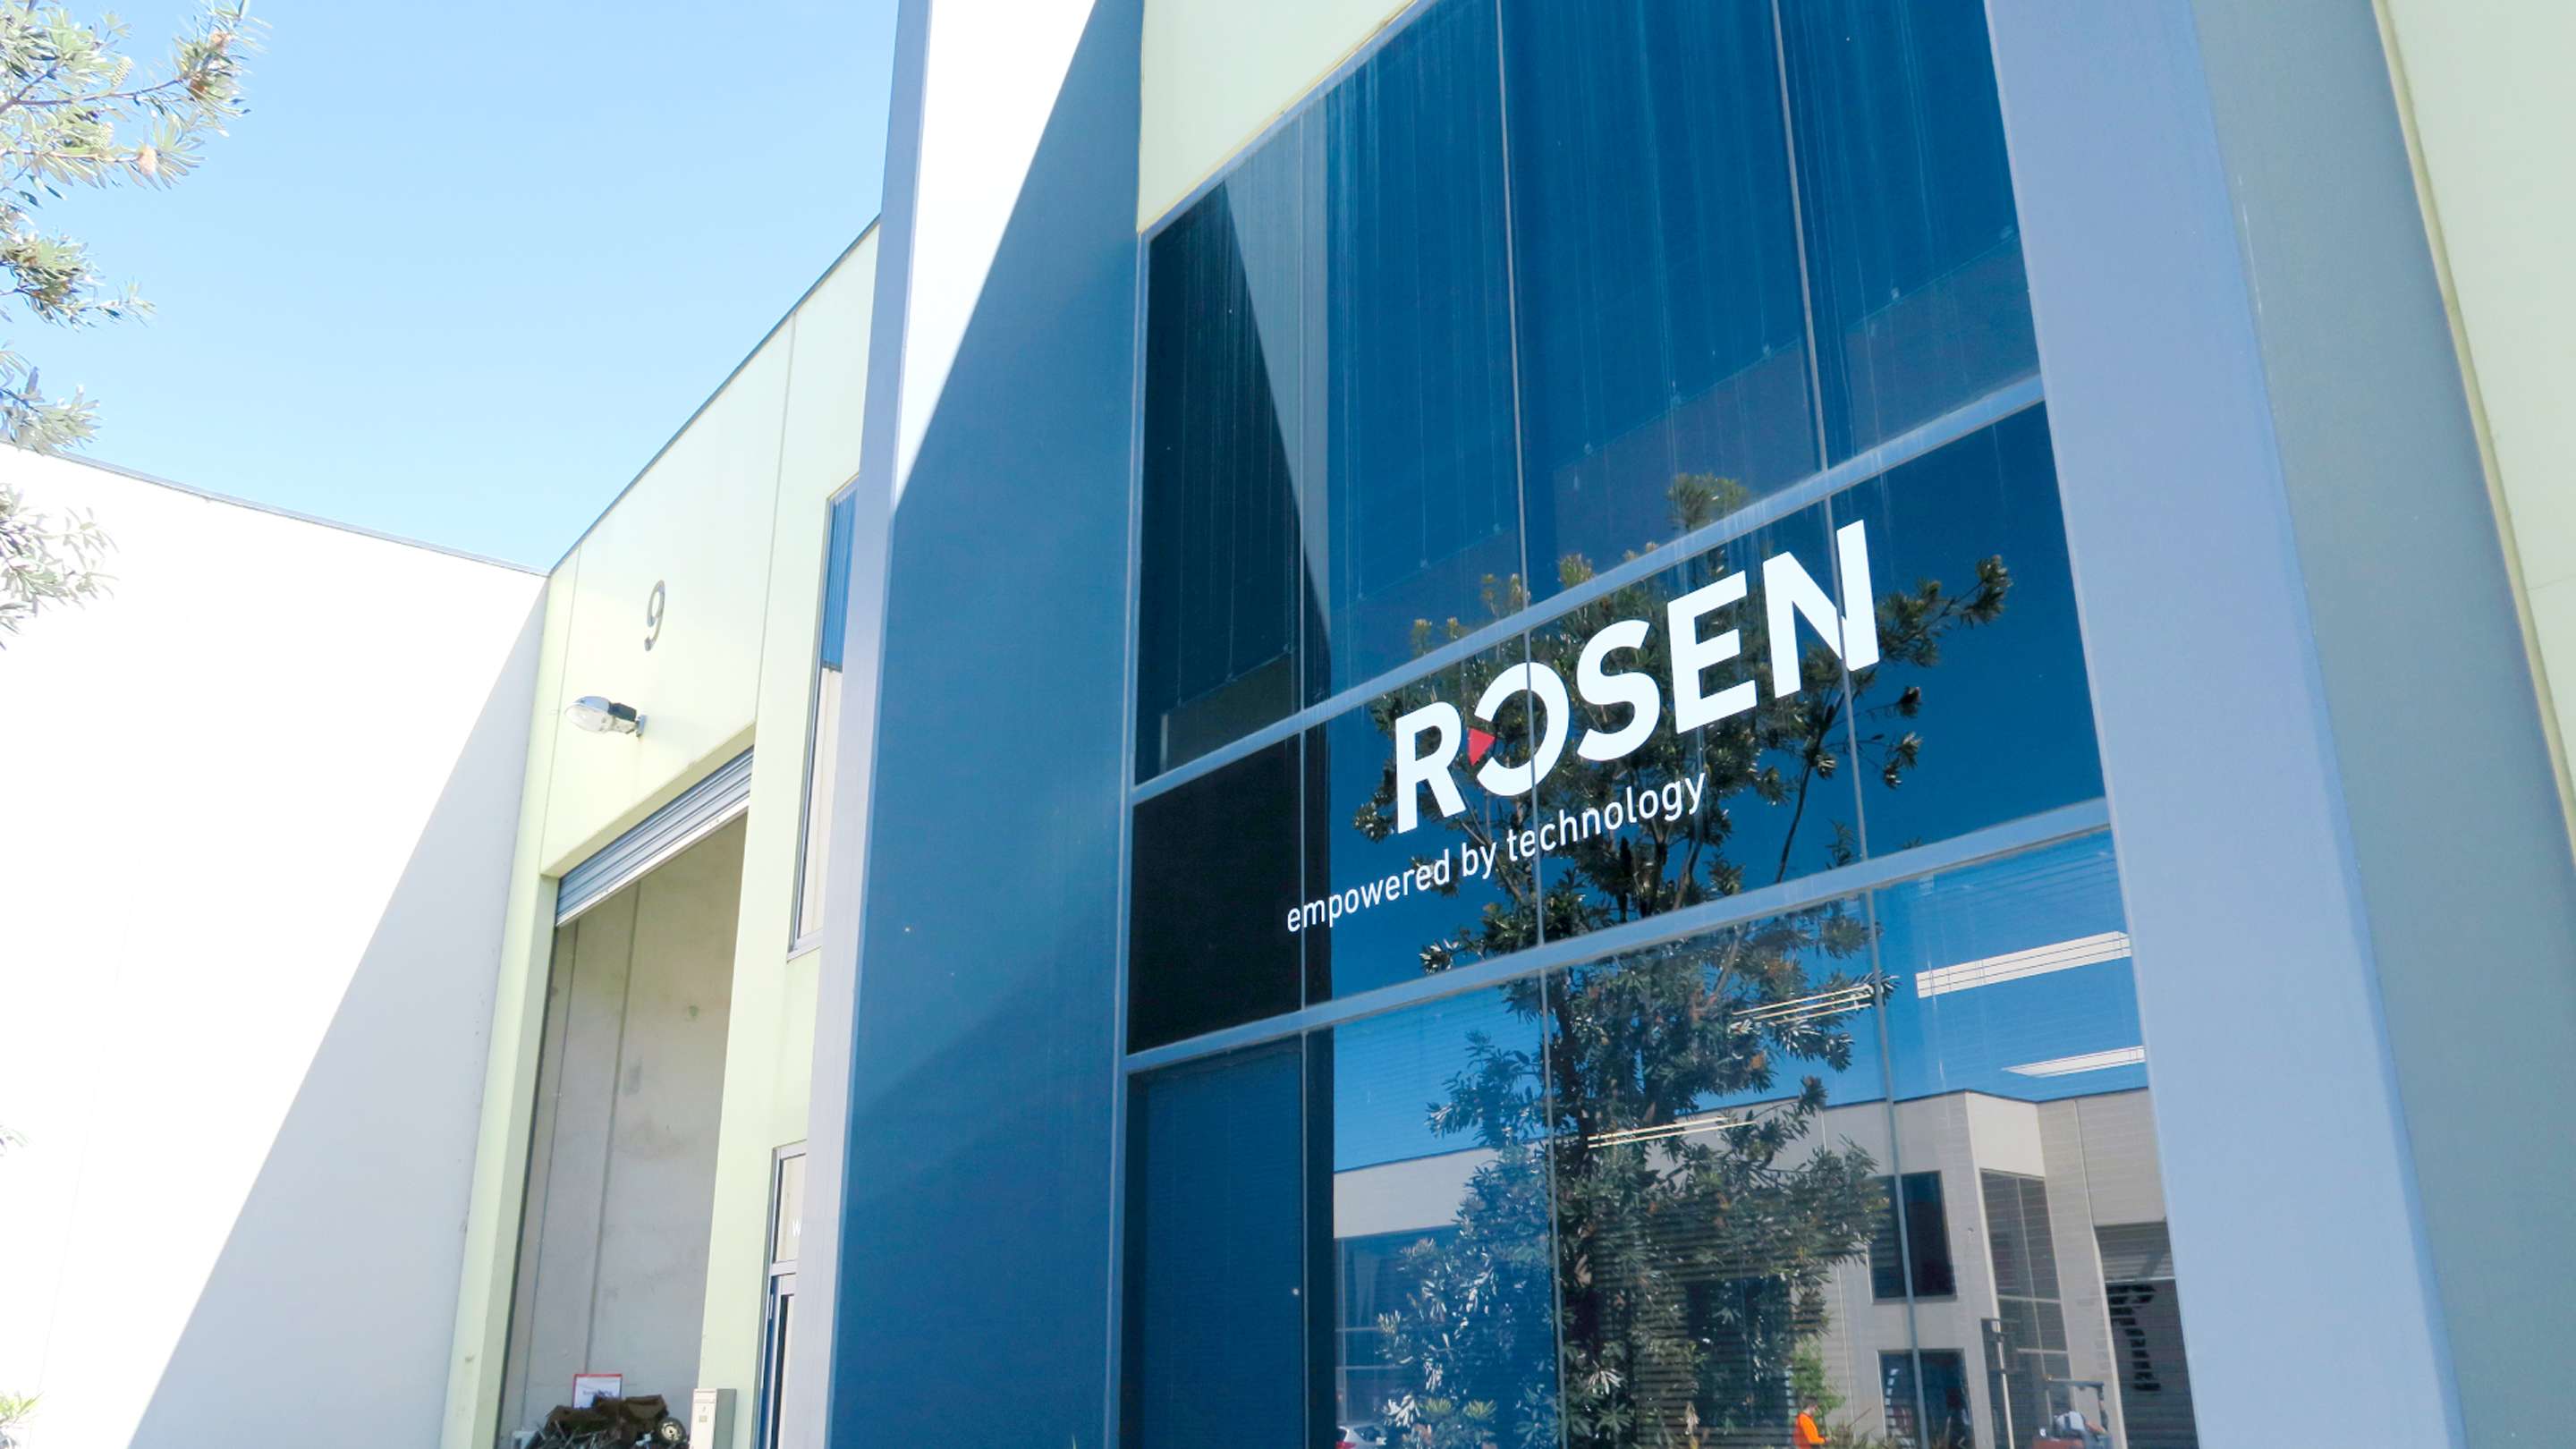 ROSEN location in Melbourne, Australia.